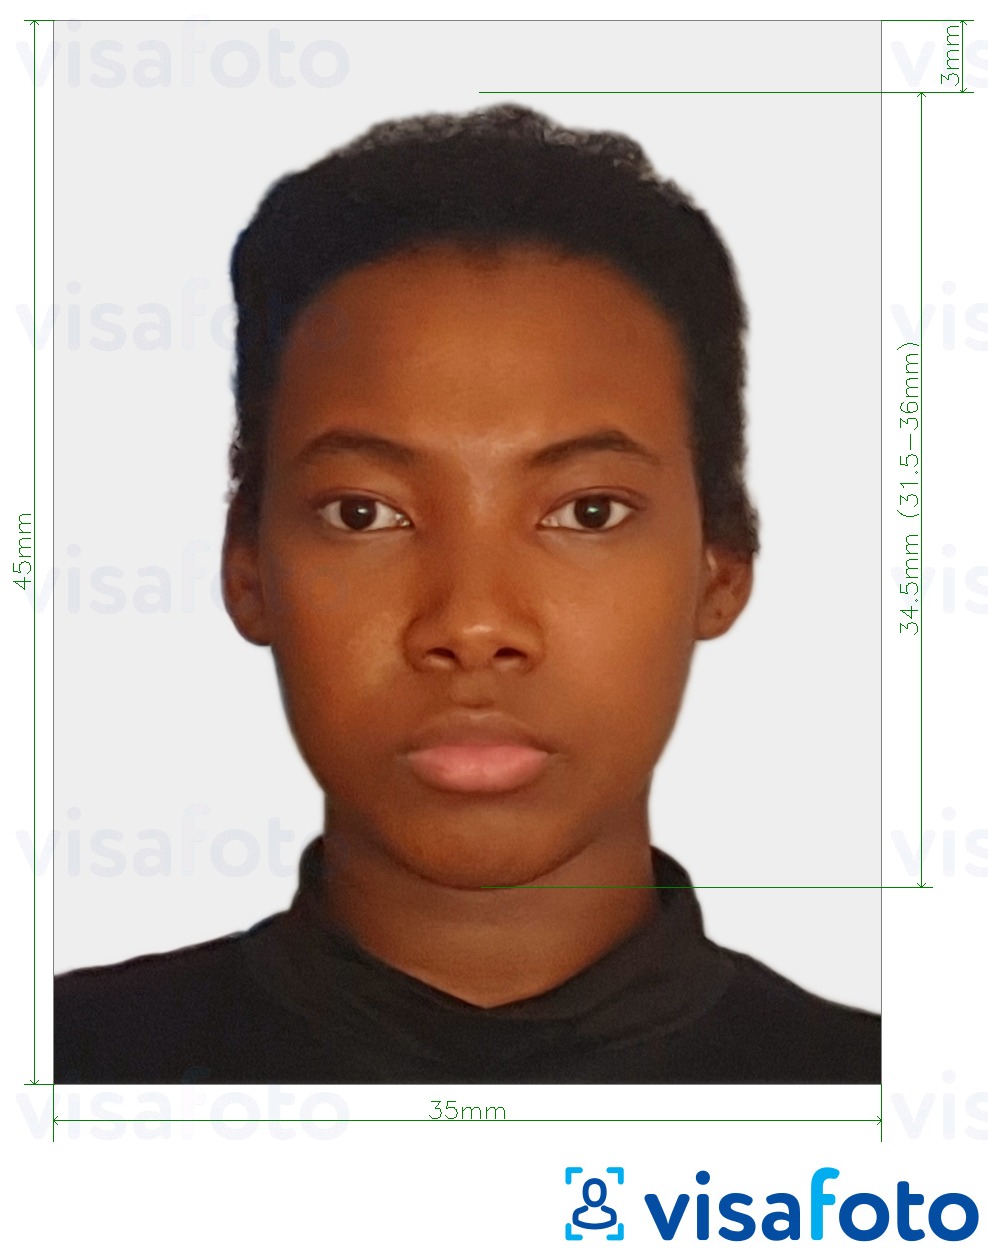 Przykład zdjęcia dla Suriname visa online z podaniem dokładnego rozmiaru.